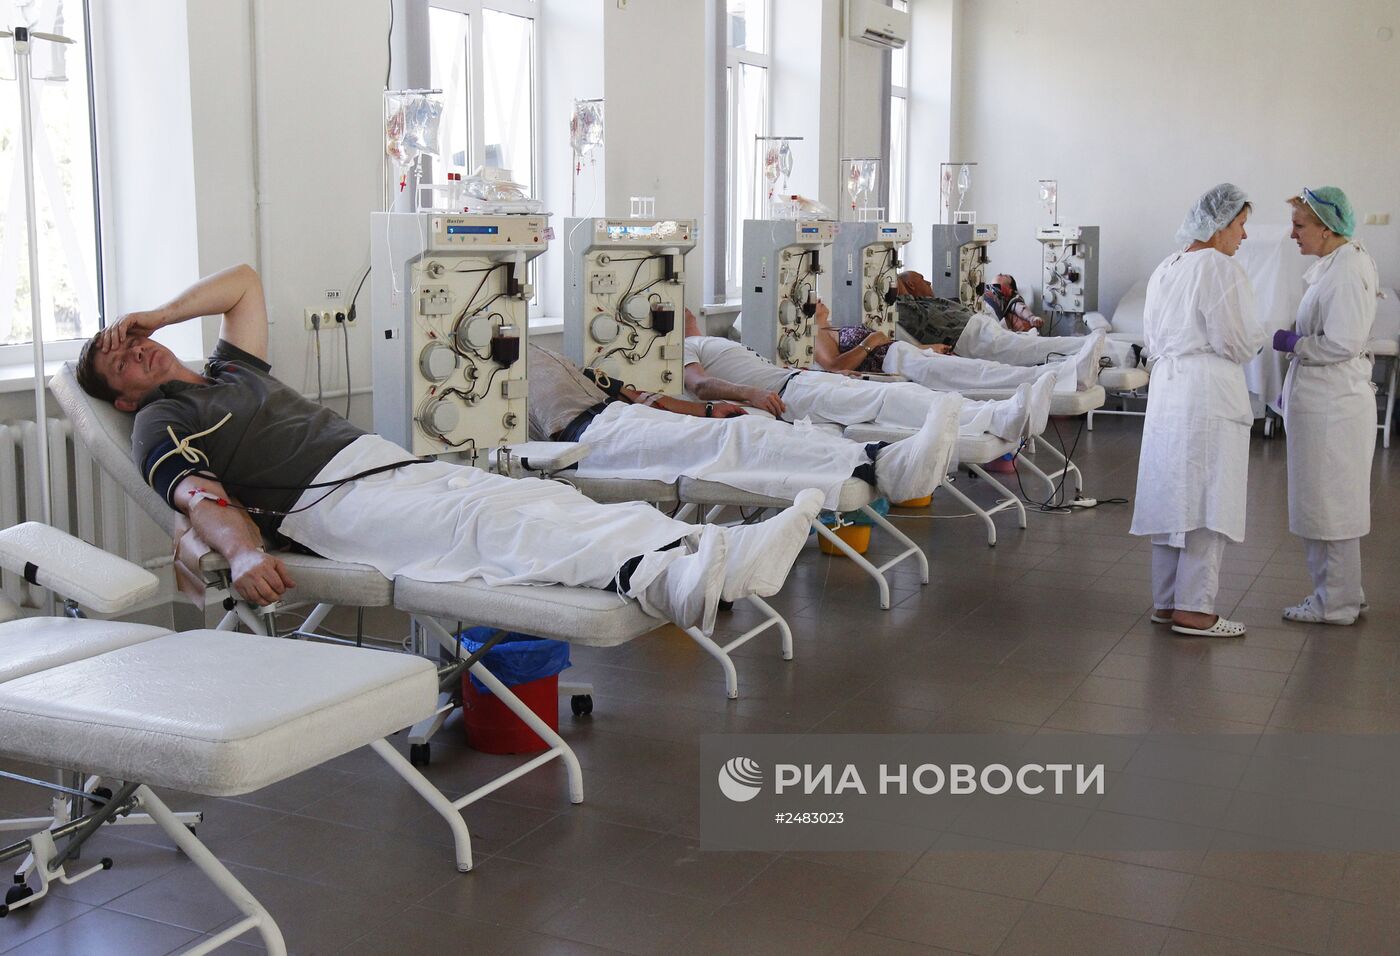 Сдача крови для пострадавших при обстрелах в Донецке